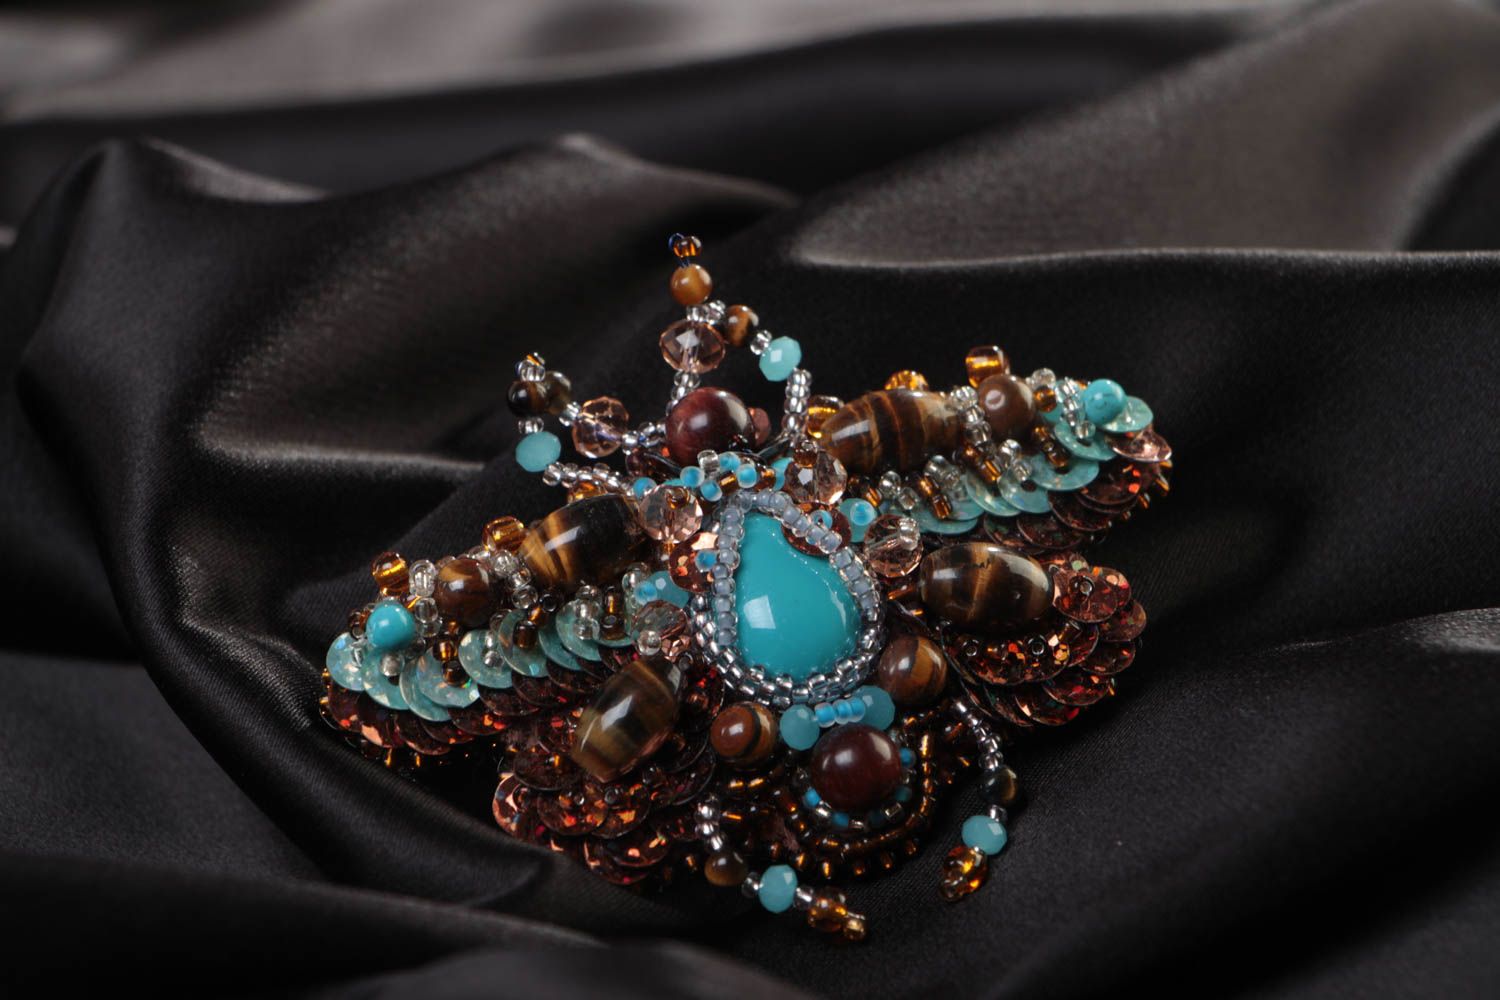 Объемная брошь с вышивкой бисером и камнями ручной работы в виде жука голубая фото 1